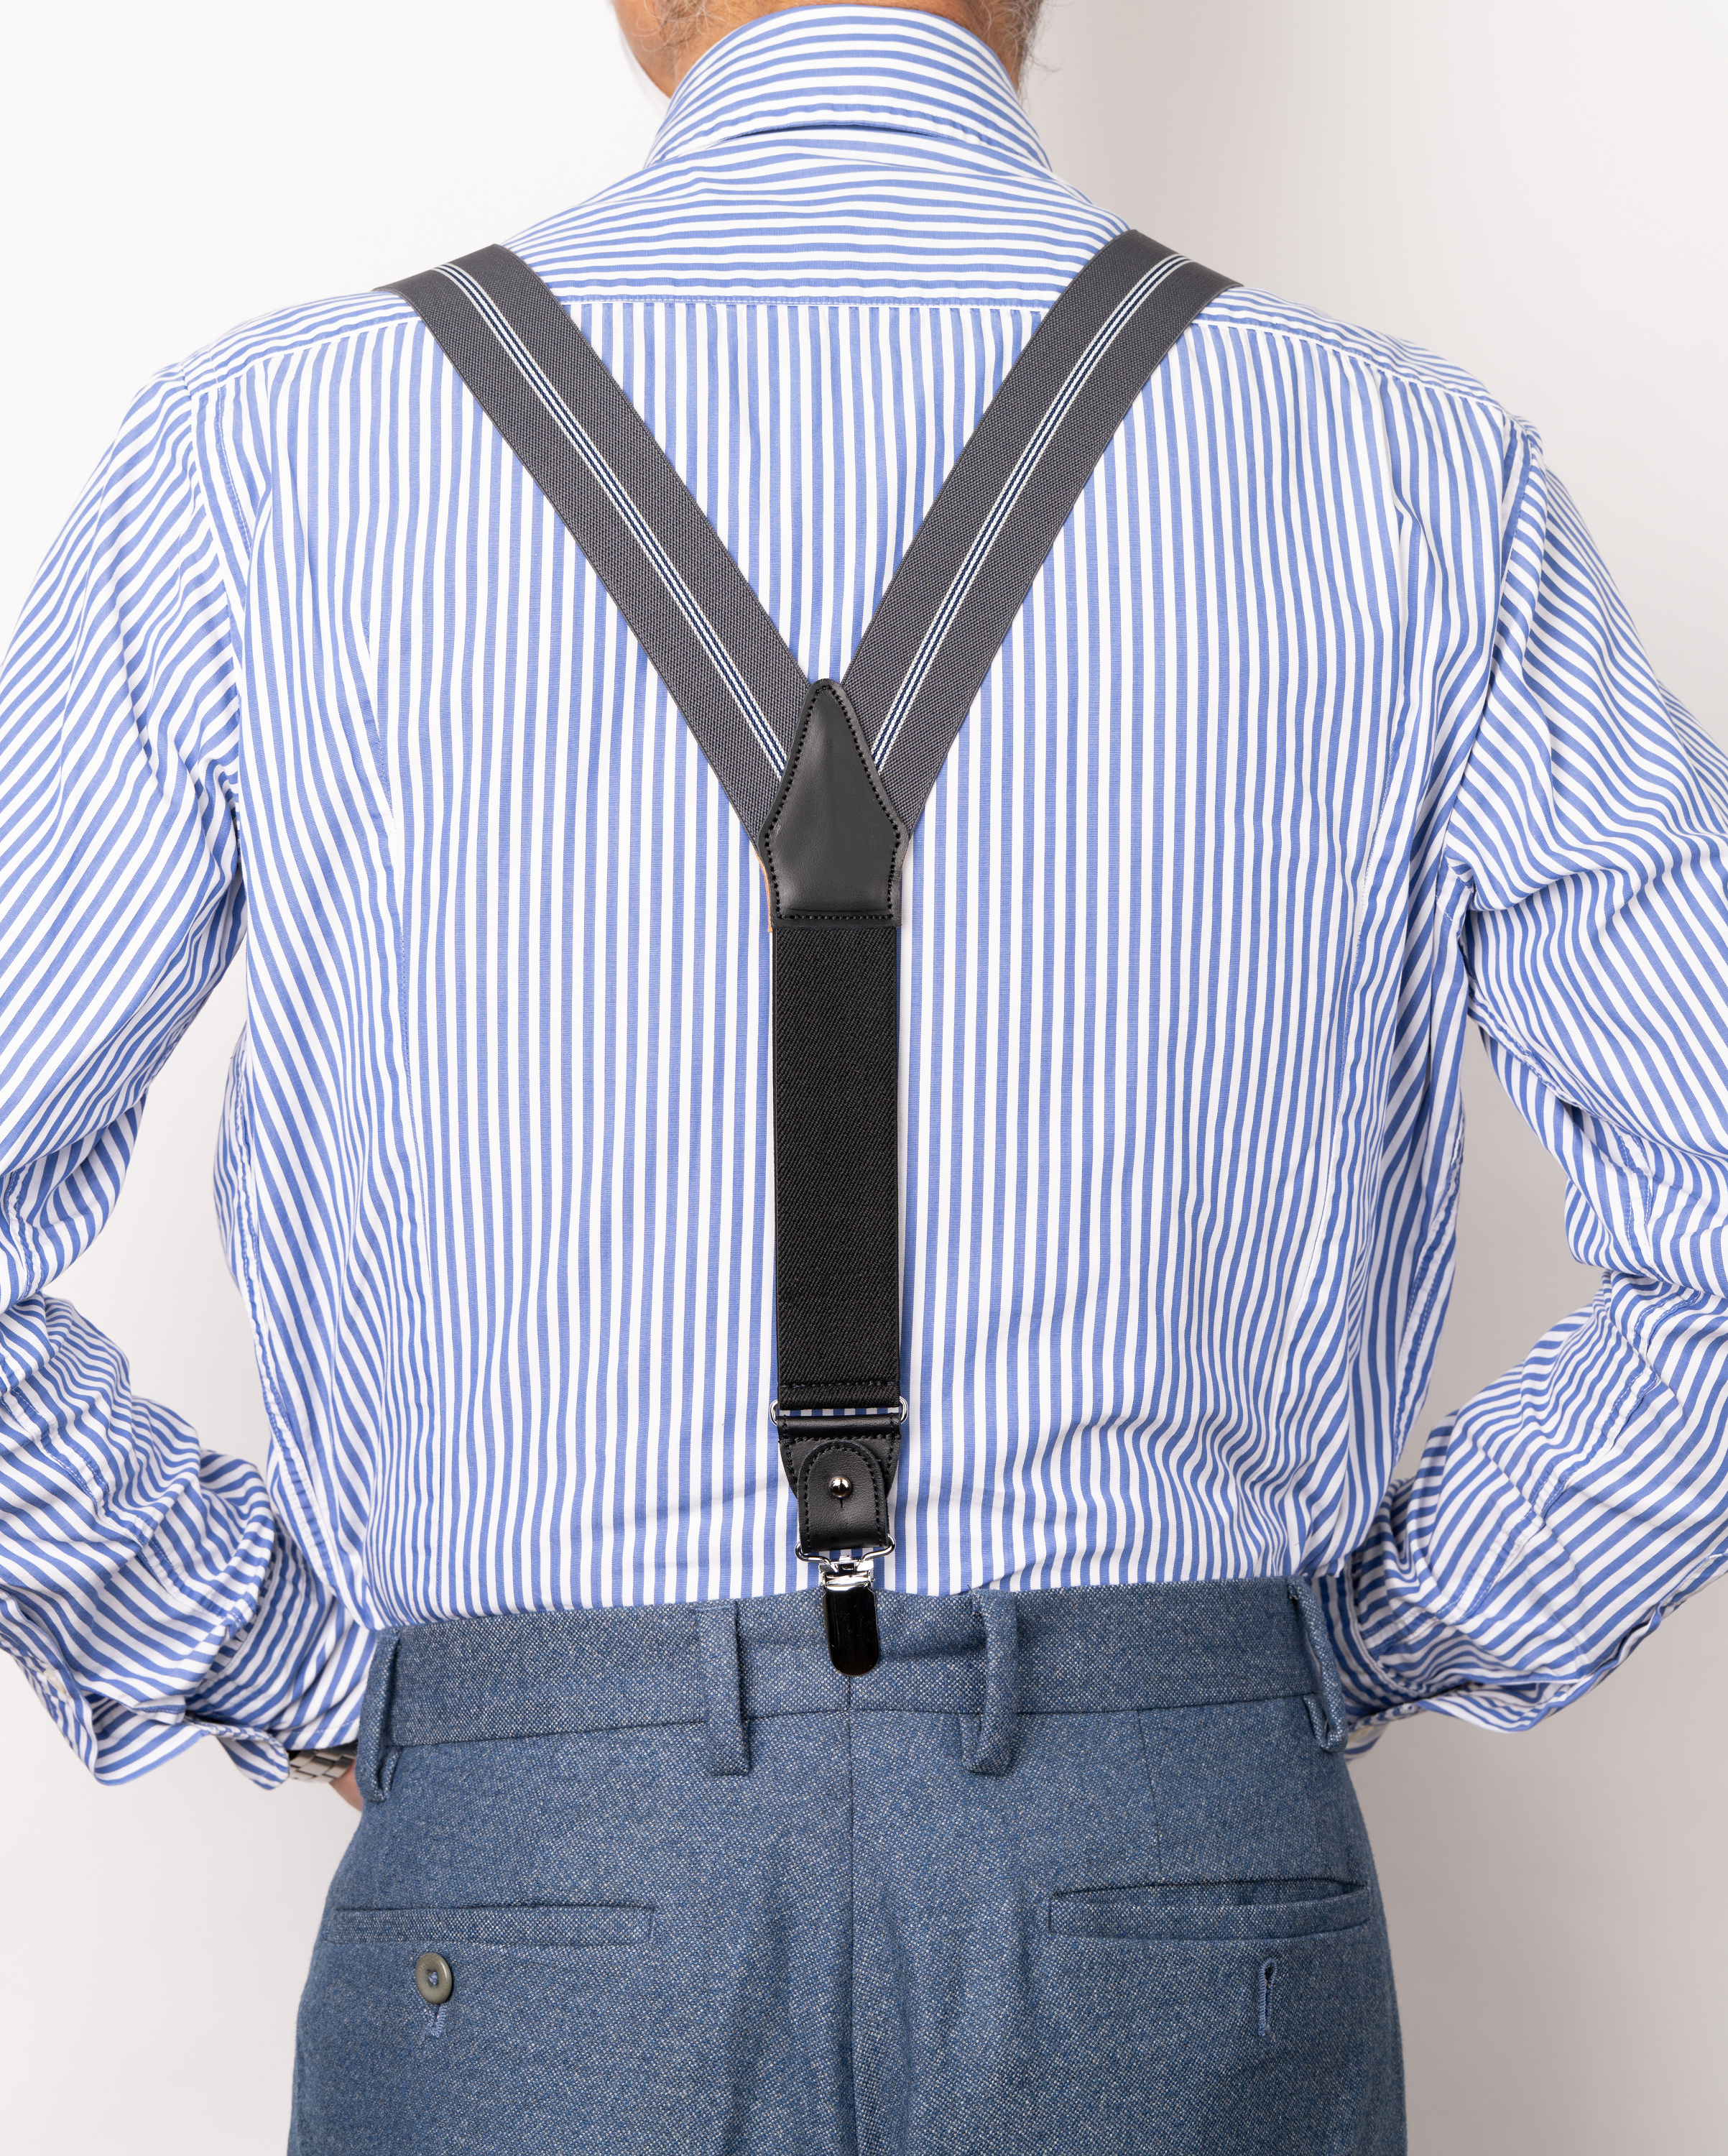 35mm Gebart Center Stripe × Cowhide Suspenders